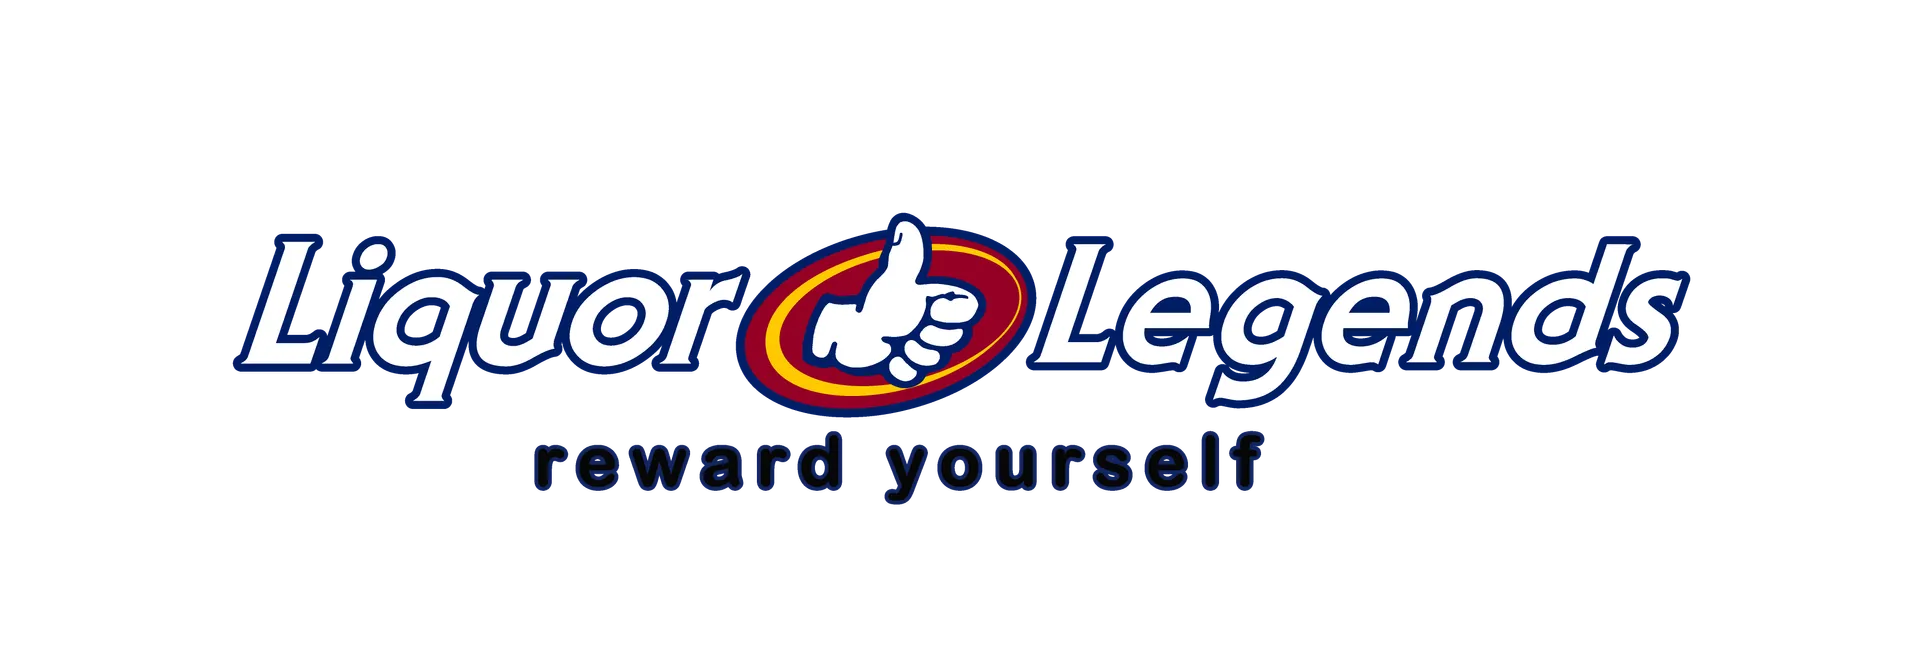 LIQUOR LEGENDS logo